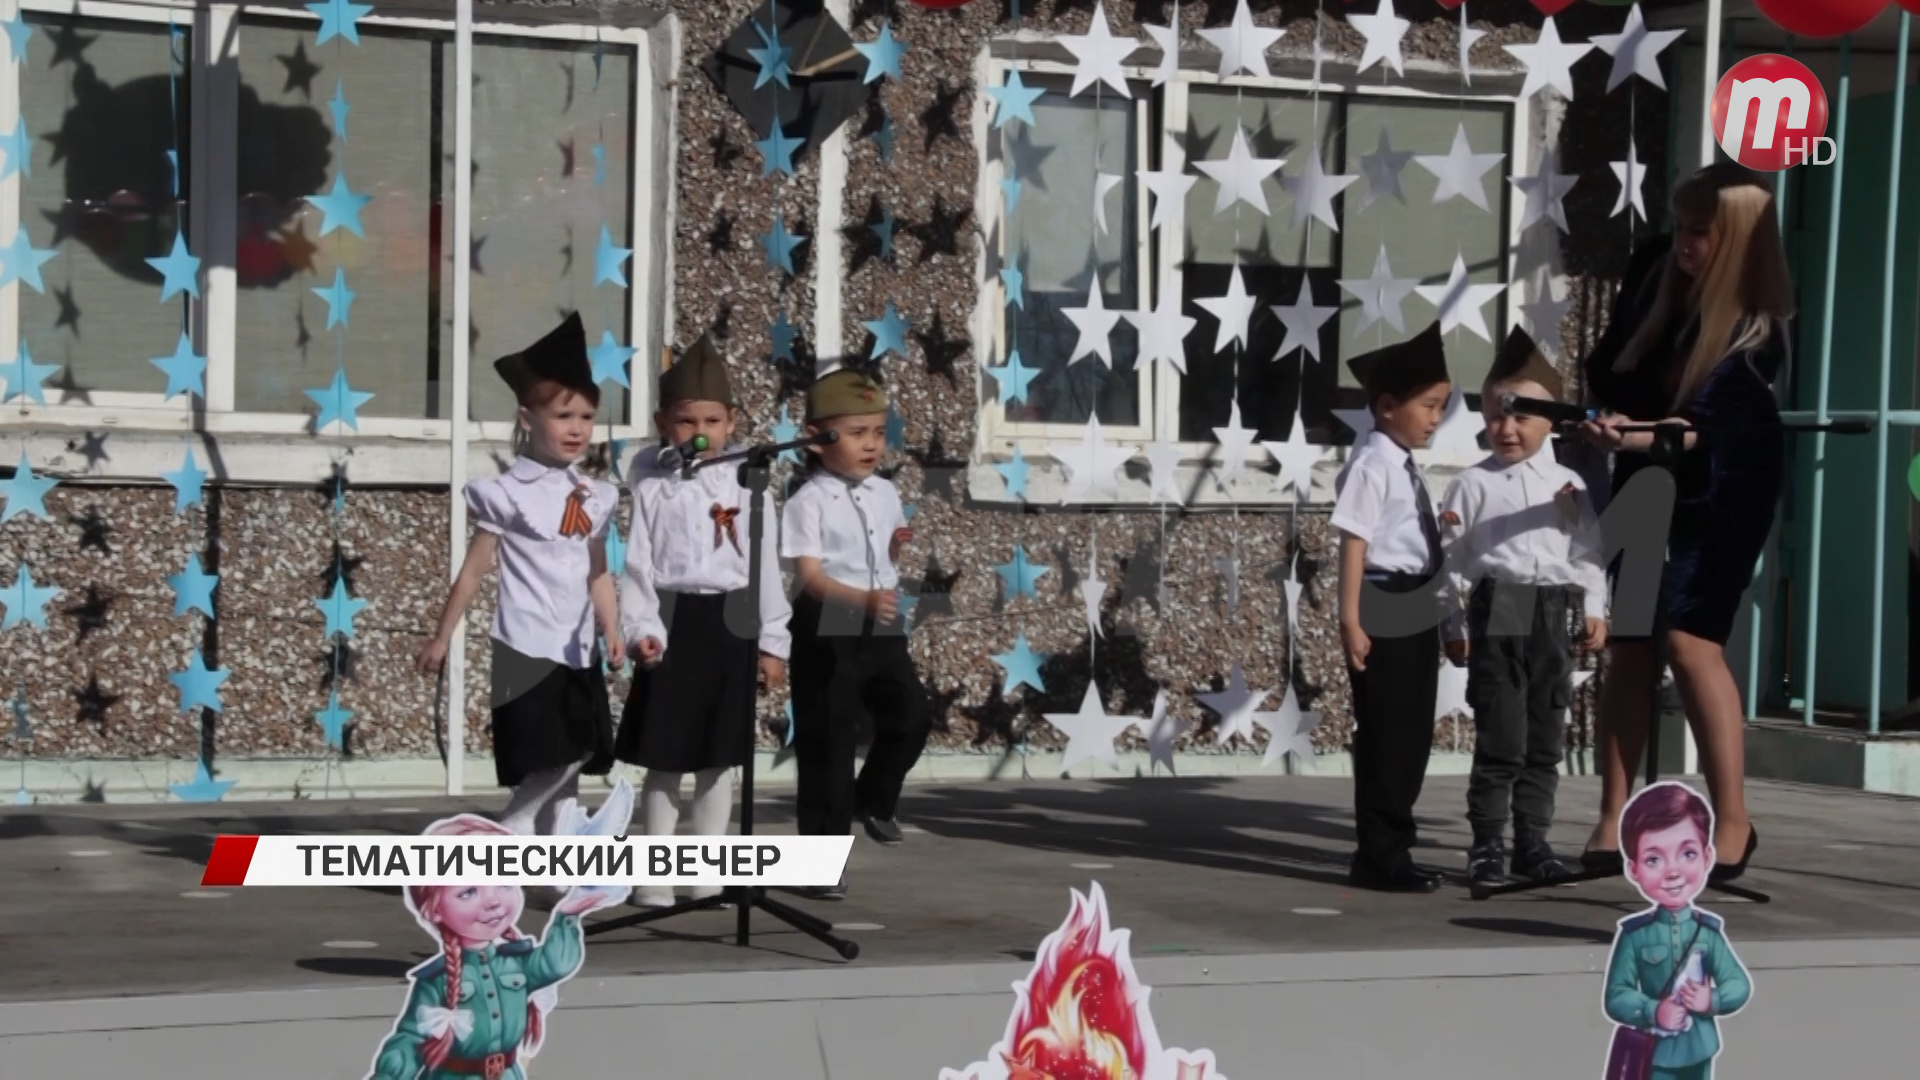 В Улан-Удэ в преддверии праздника Великой Победы прошёл тематический вечер в детском саду «Солнышко»